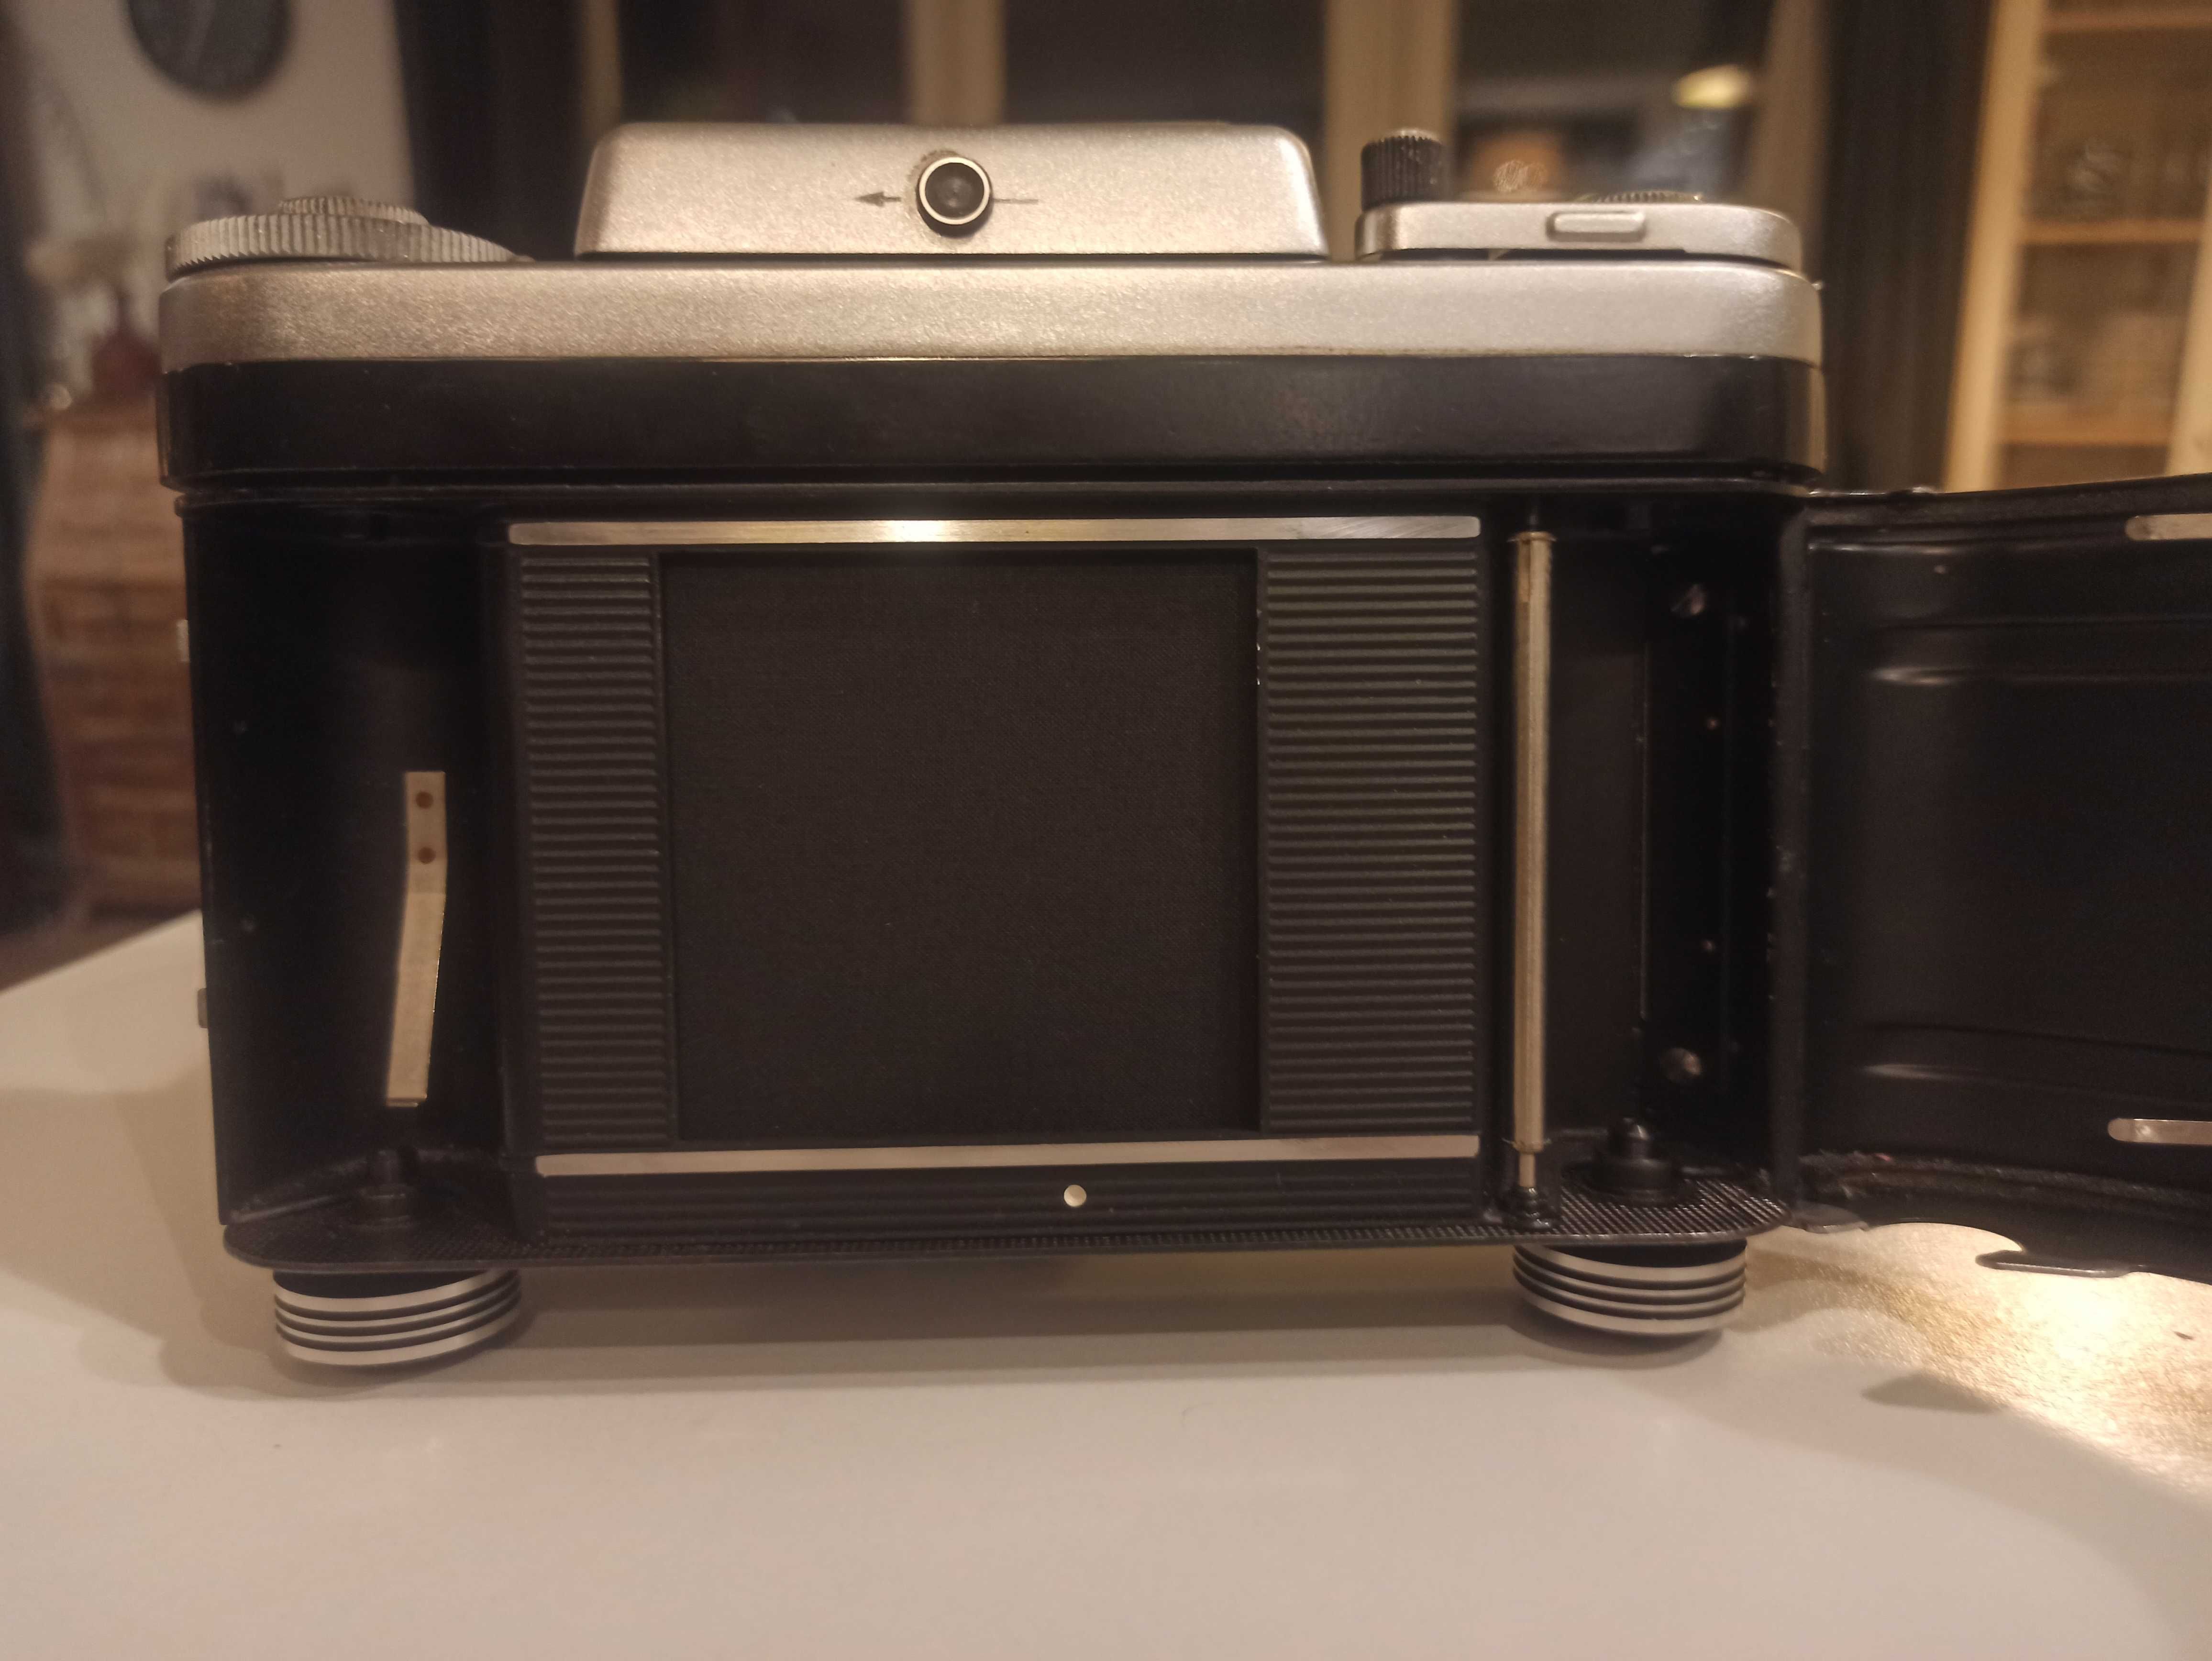 Świetny aparat Pentacon six TL z obiektywem Carl Zeiss z pokrowcem